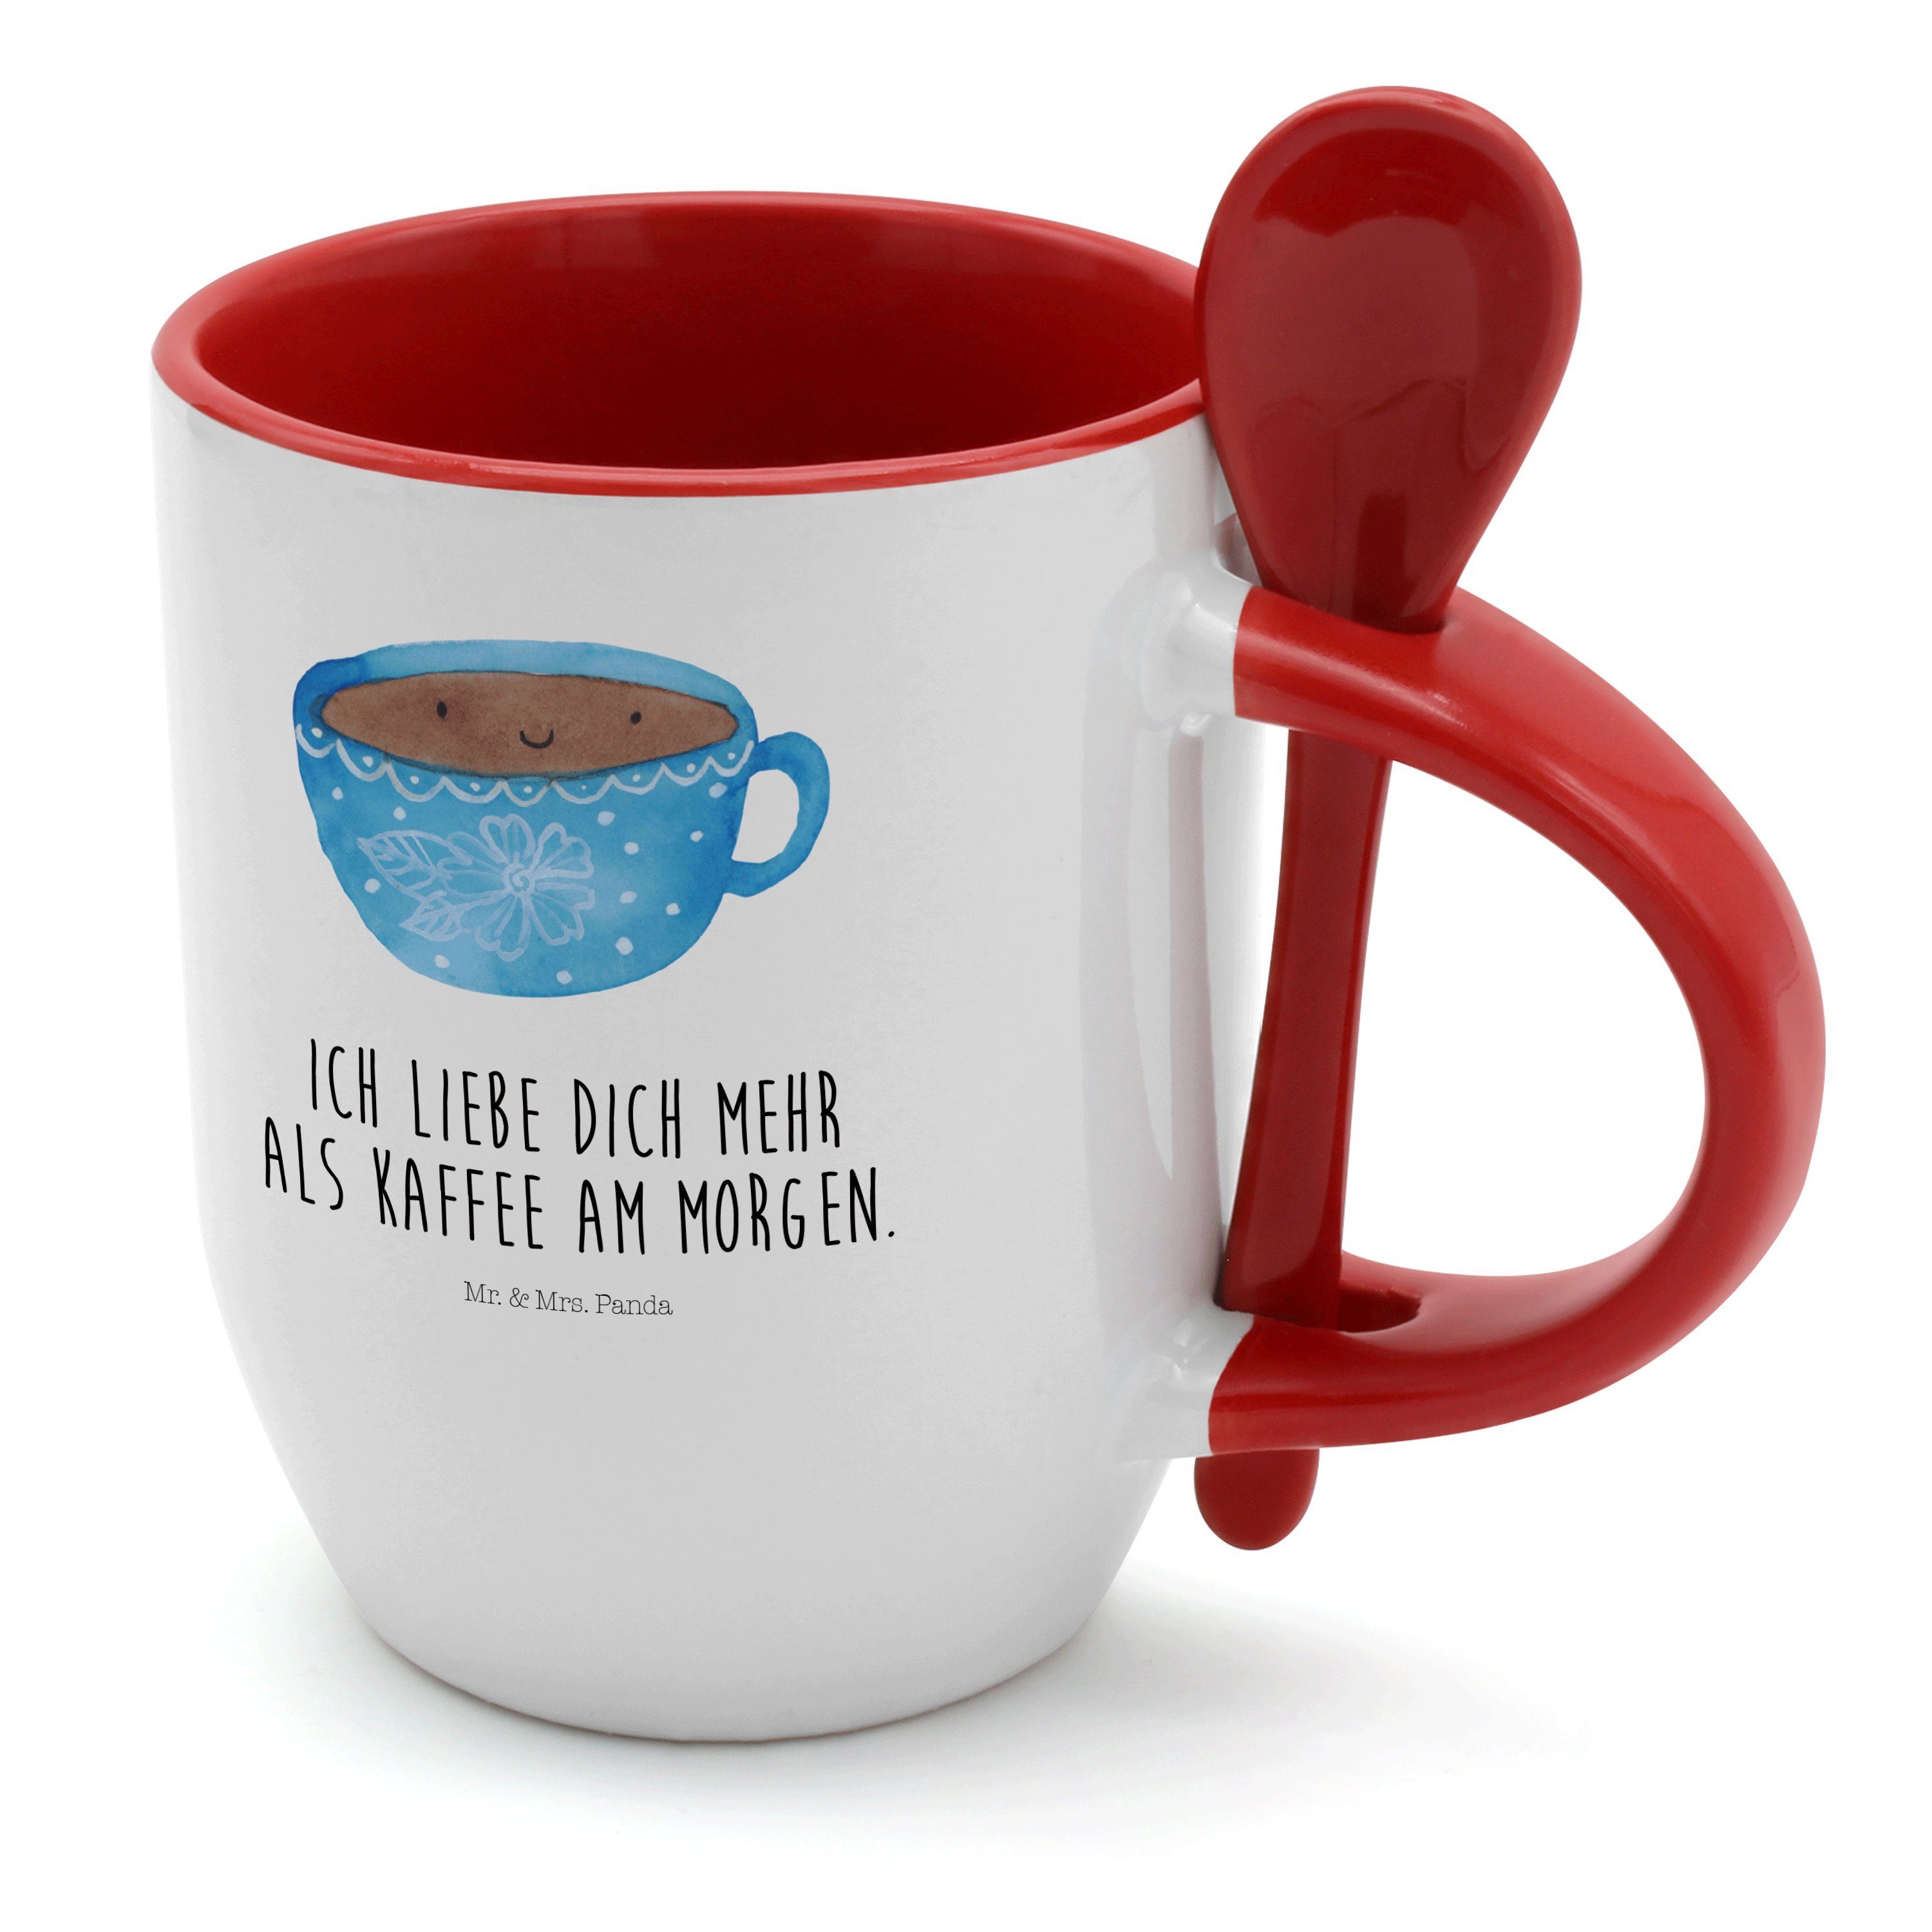 Mr. & Mrs. Panda Tasse Kaffee Tasse - Weiß - Geschenk, Gute Laune, Kaffeebecher, Glücklich, Keramik